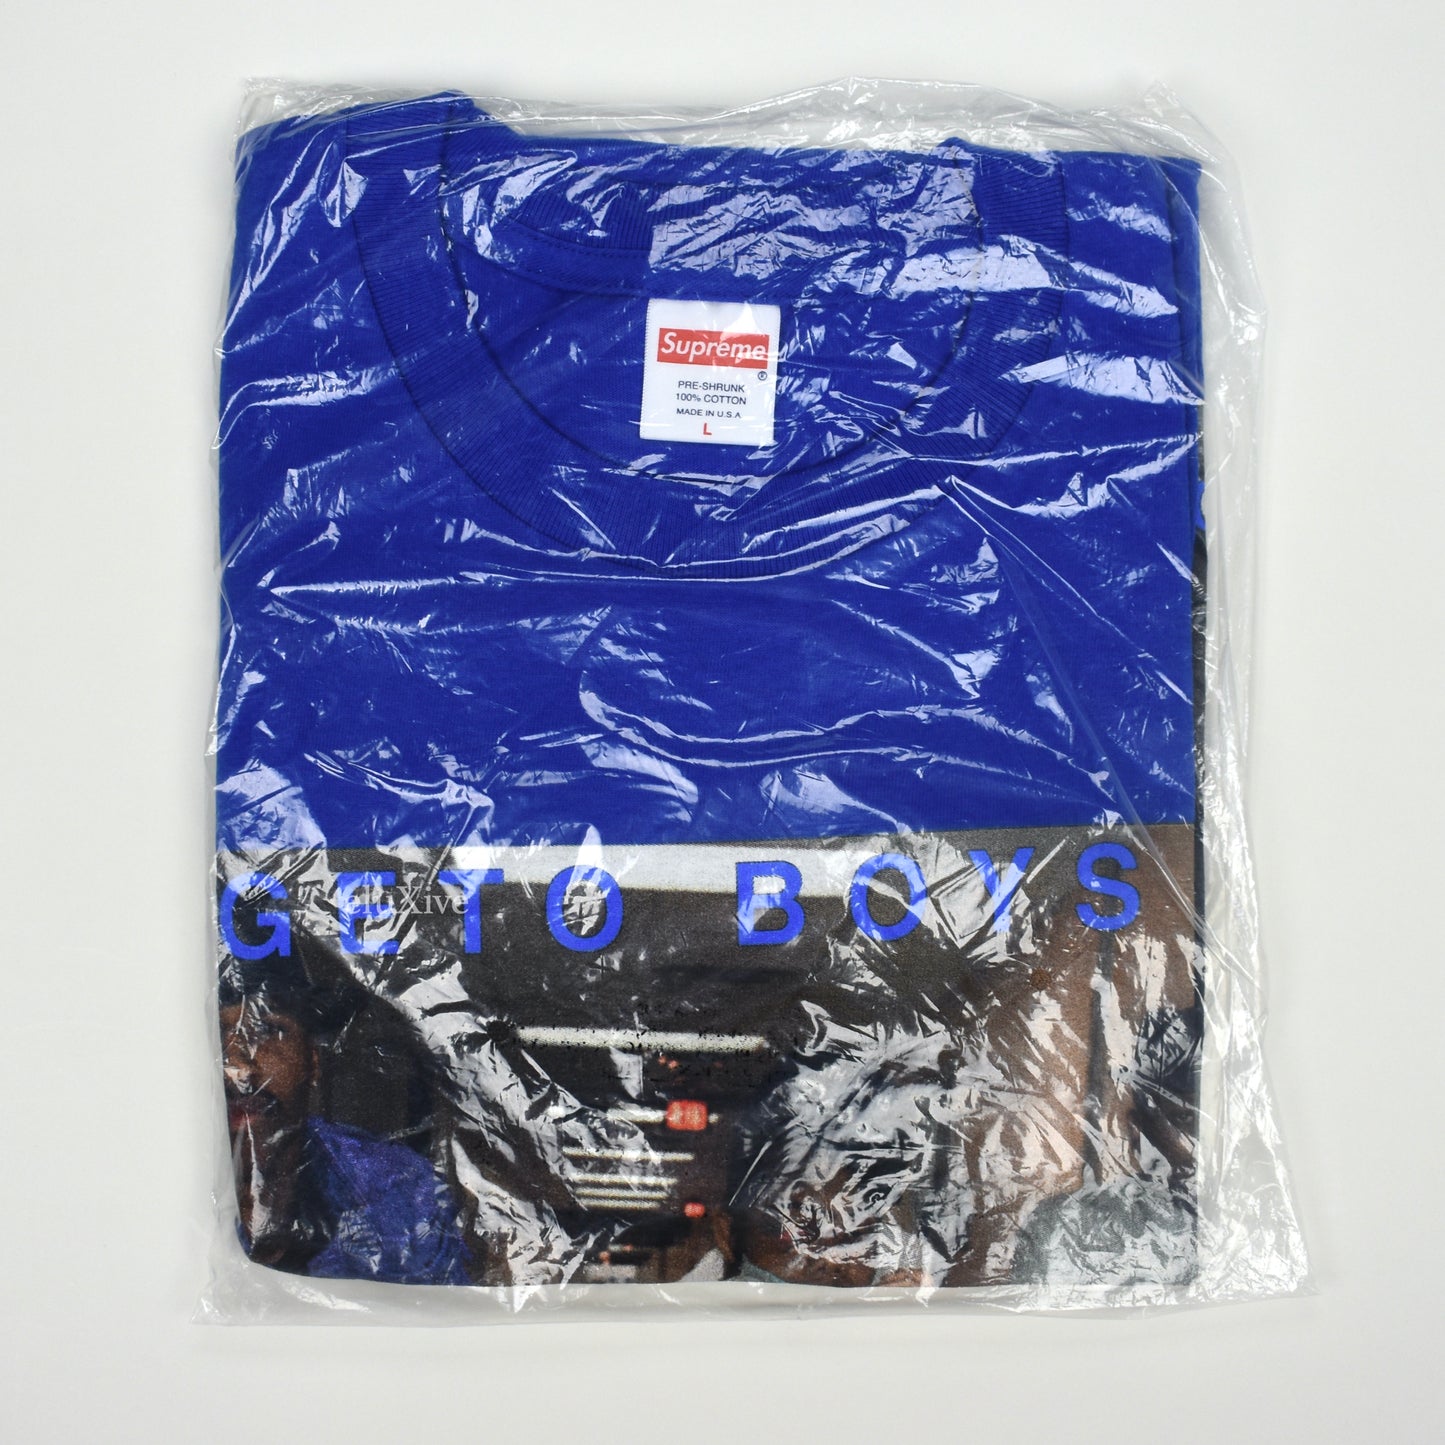 Supreme x Rap-A-Lot - Royal Blue Geto Boys T-Shirt